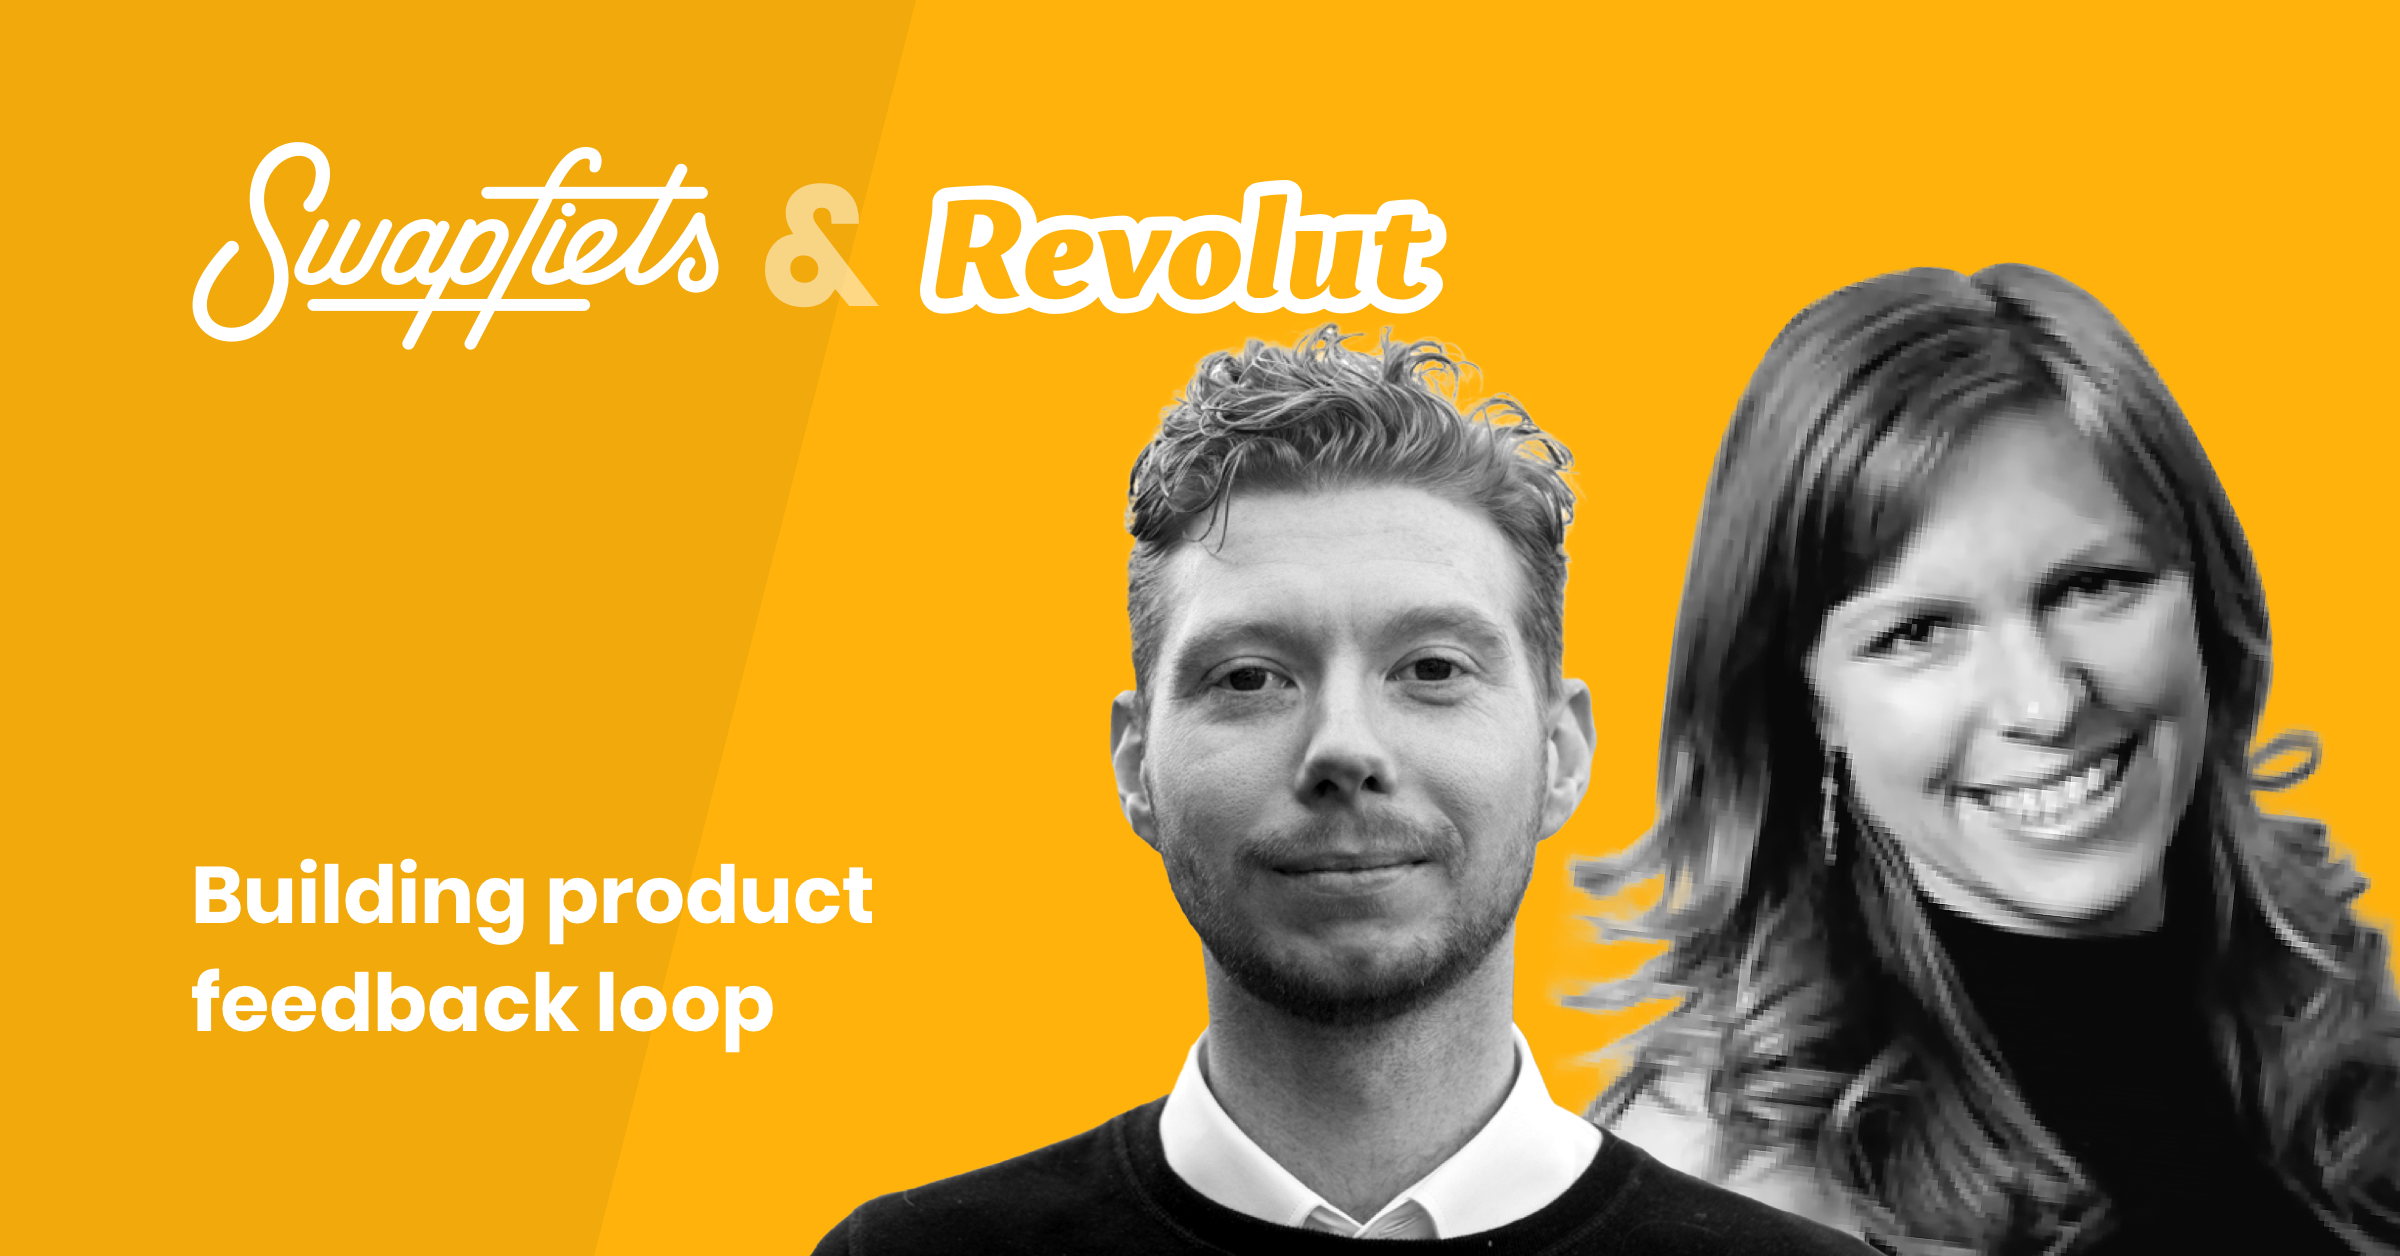 Product feedback loop: Swapfiets & Revolut